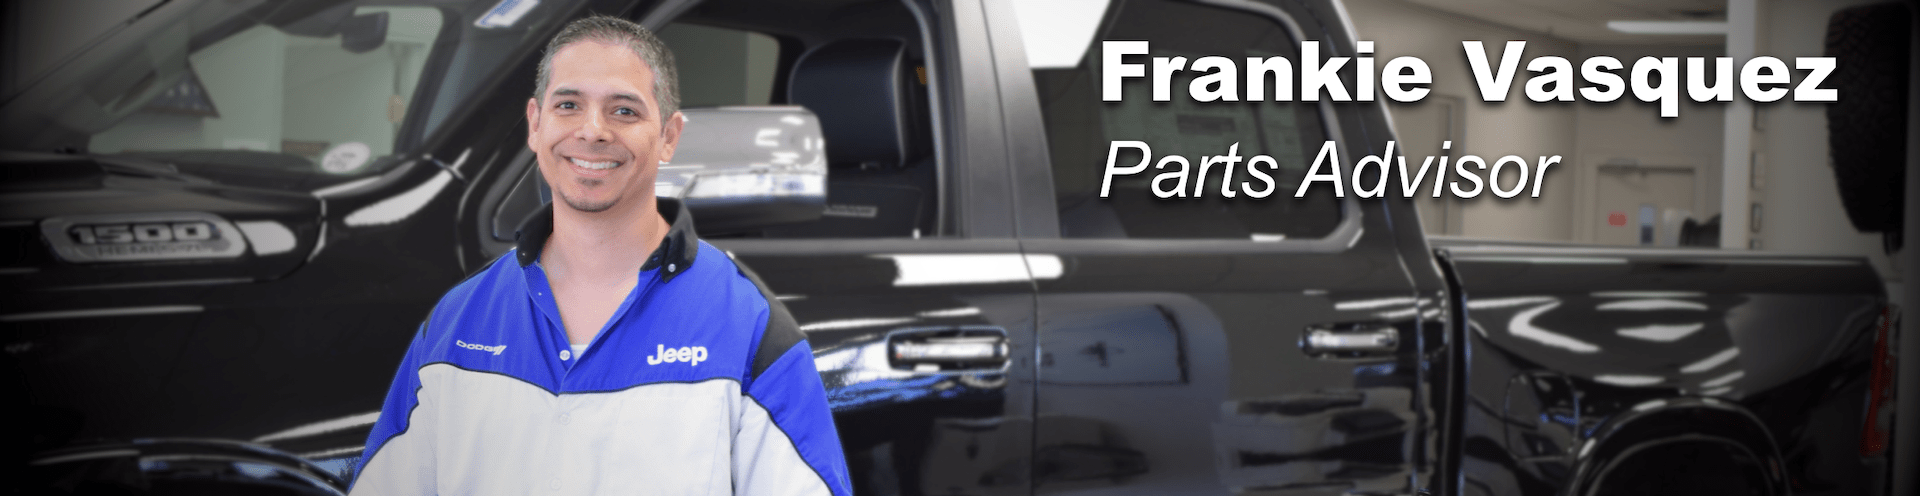 frankie vasquez parts advisor prestige chrysler dodge jeep ram